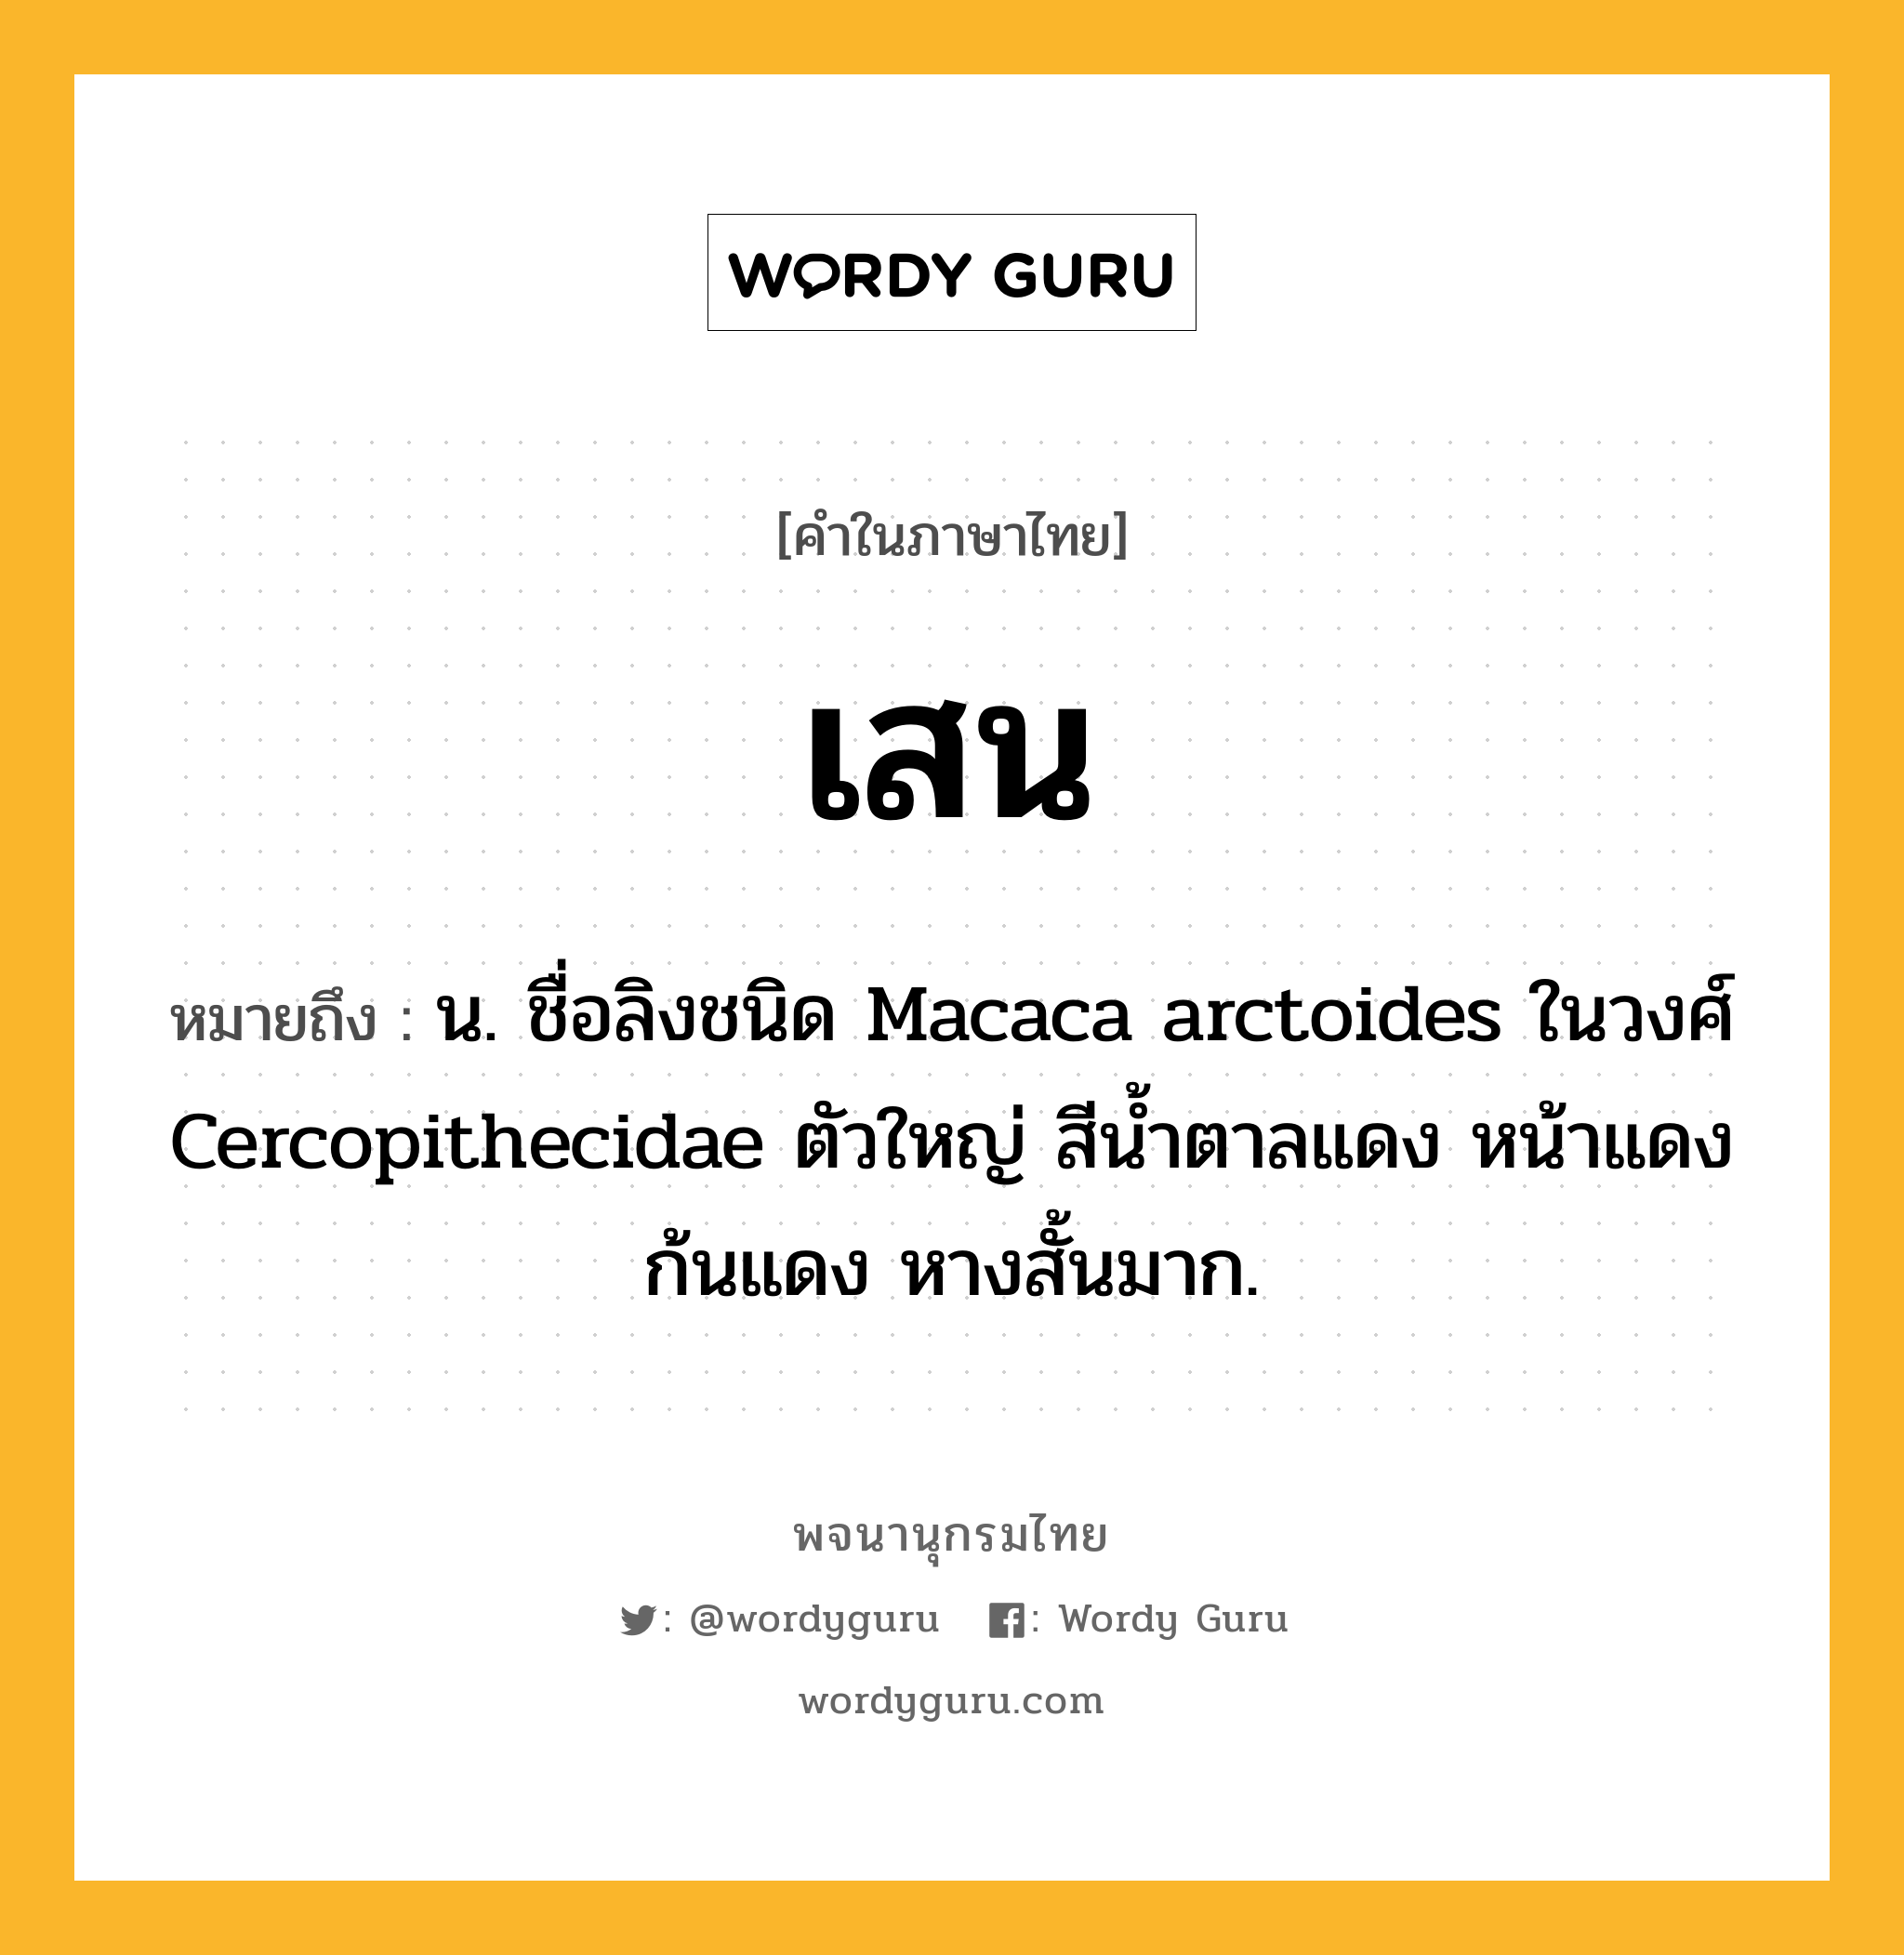 เสน หมายถึงอะไร?, คำในภาษาไทย เสน หมายถึง น. ชื่อลิงชนิด Macaca arctoides ในวงศ์ Cercopithecidae ตัวใหญ่ สีนํ้าตาลแดง หน้าแดง ก้นแดง หางสั้นมาก.